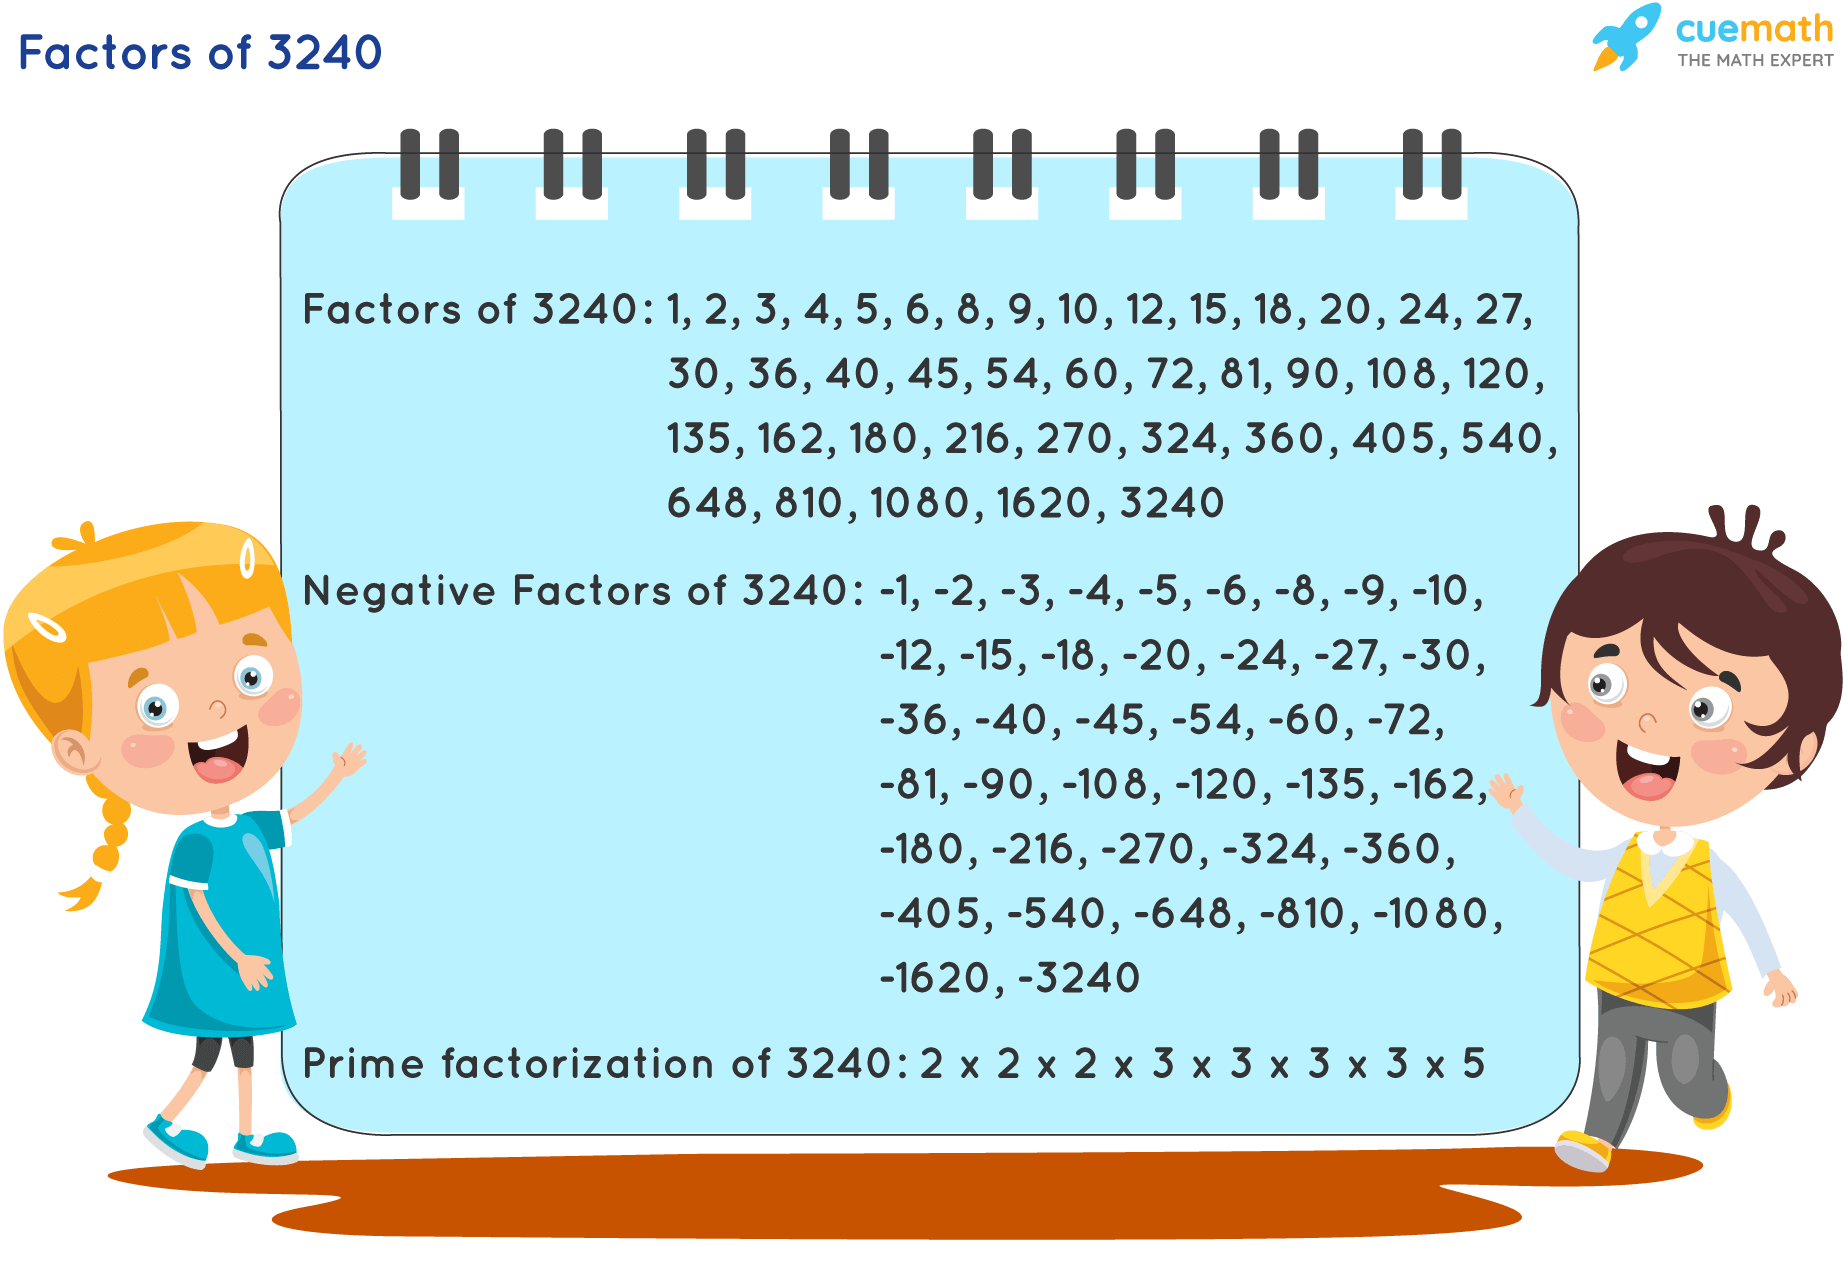 Factors of 3240